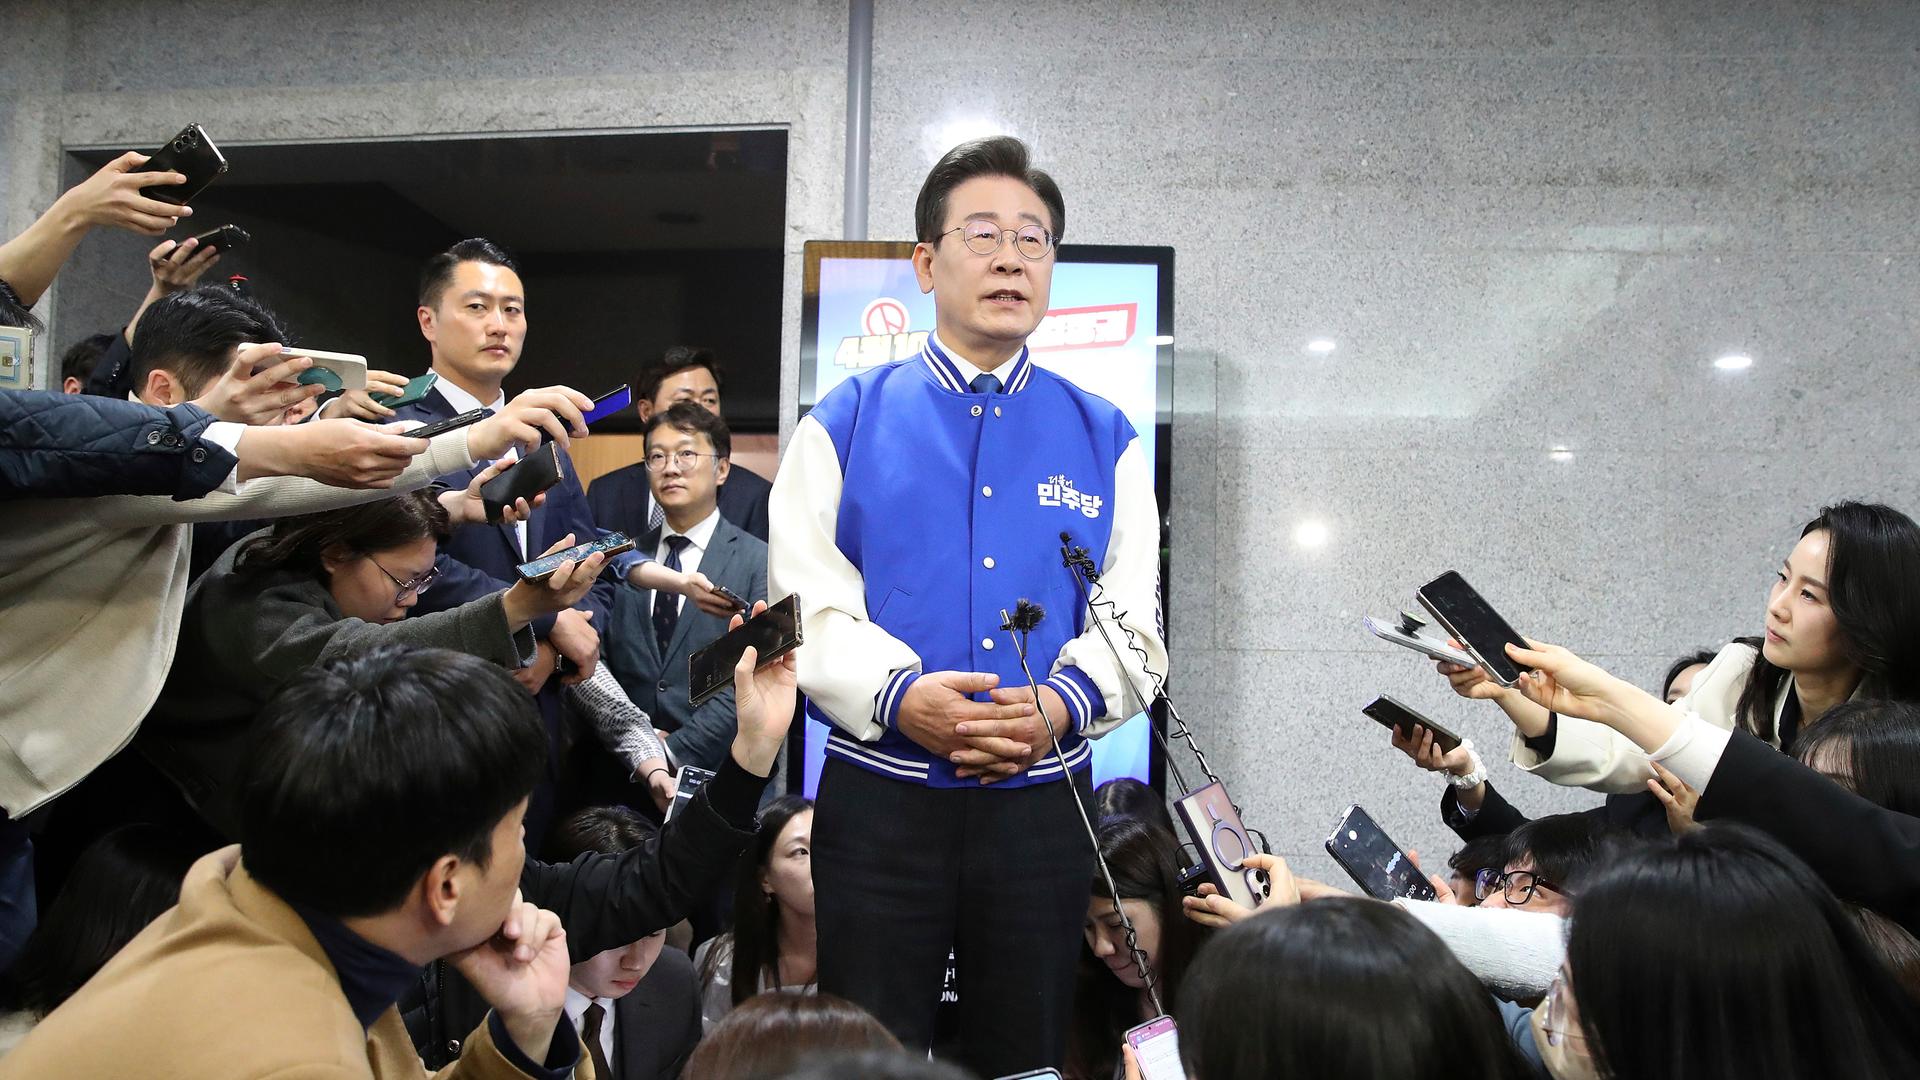 Seoul: Lee Jae-myung, Oppositionsführer der Demokratischen Partei, spricht zu Reportern, nachdem er die TV-Ãbertragung der Wahlergebnisse der Parlamentswahlen in der Nationalversammlung verfolgt hat.